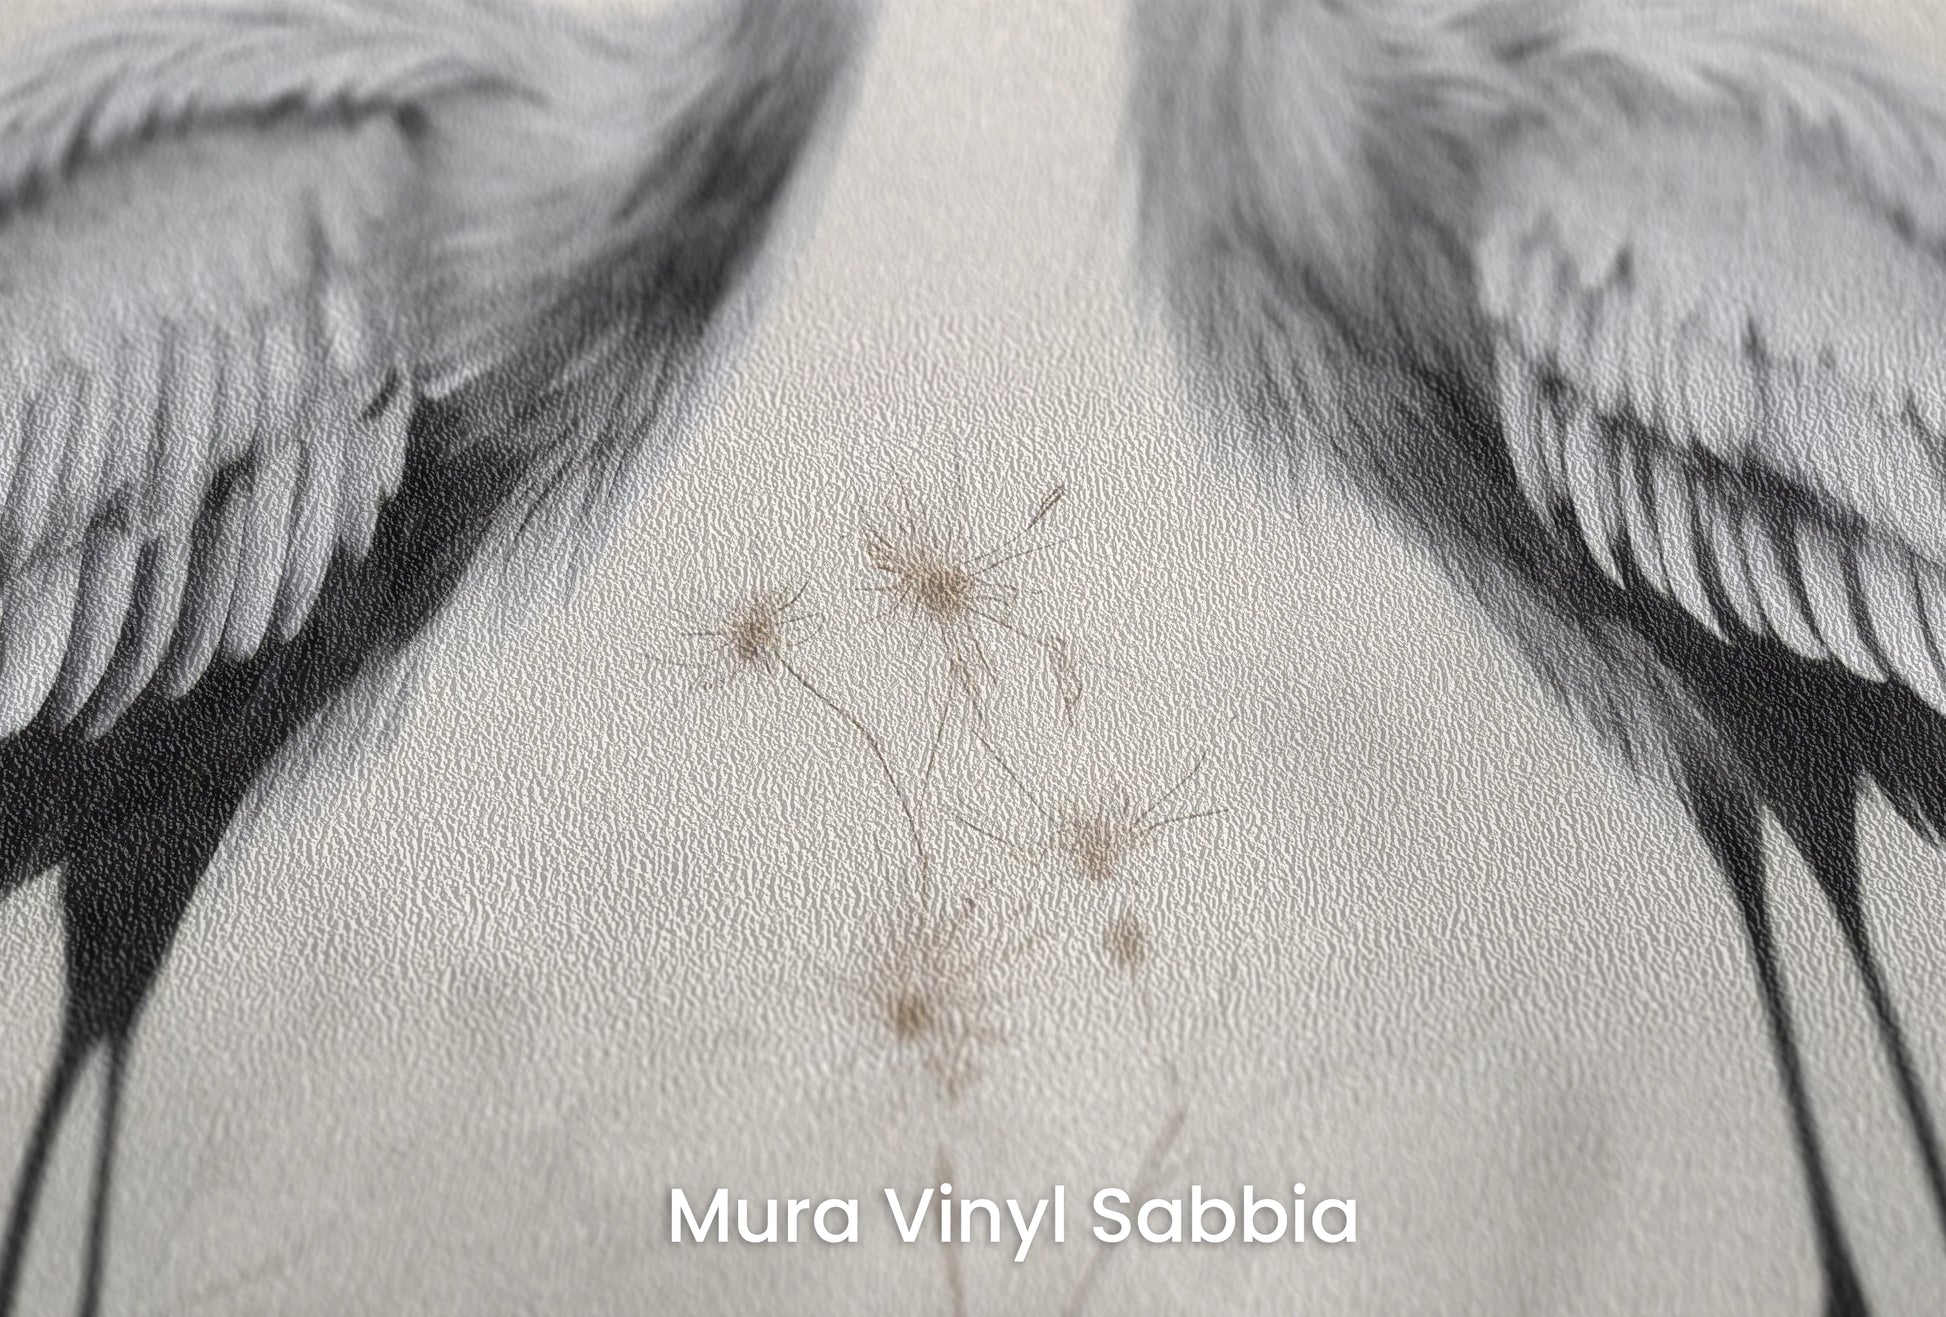 Zbliżenie na artystyczną fototapetę o nazwie Silent Duet na podłożu Mura Vinyl Sabbia struktura grubego ziarna piasku.